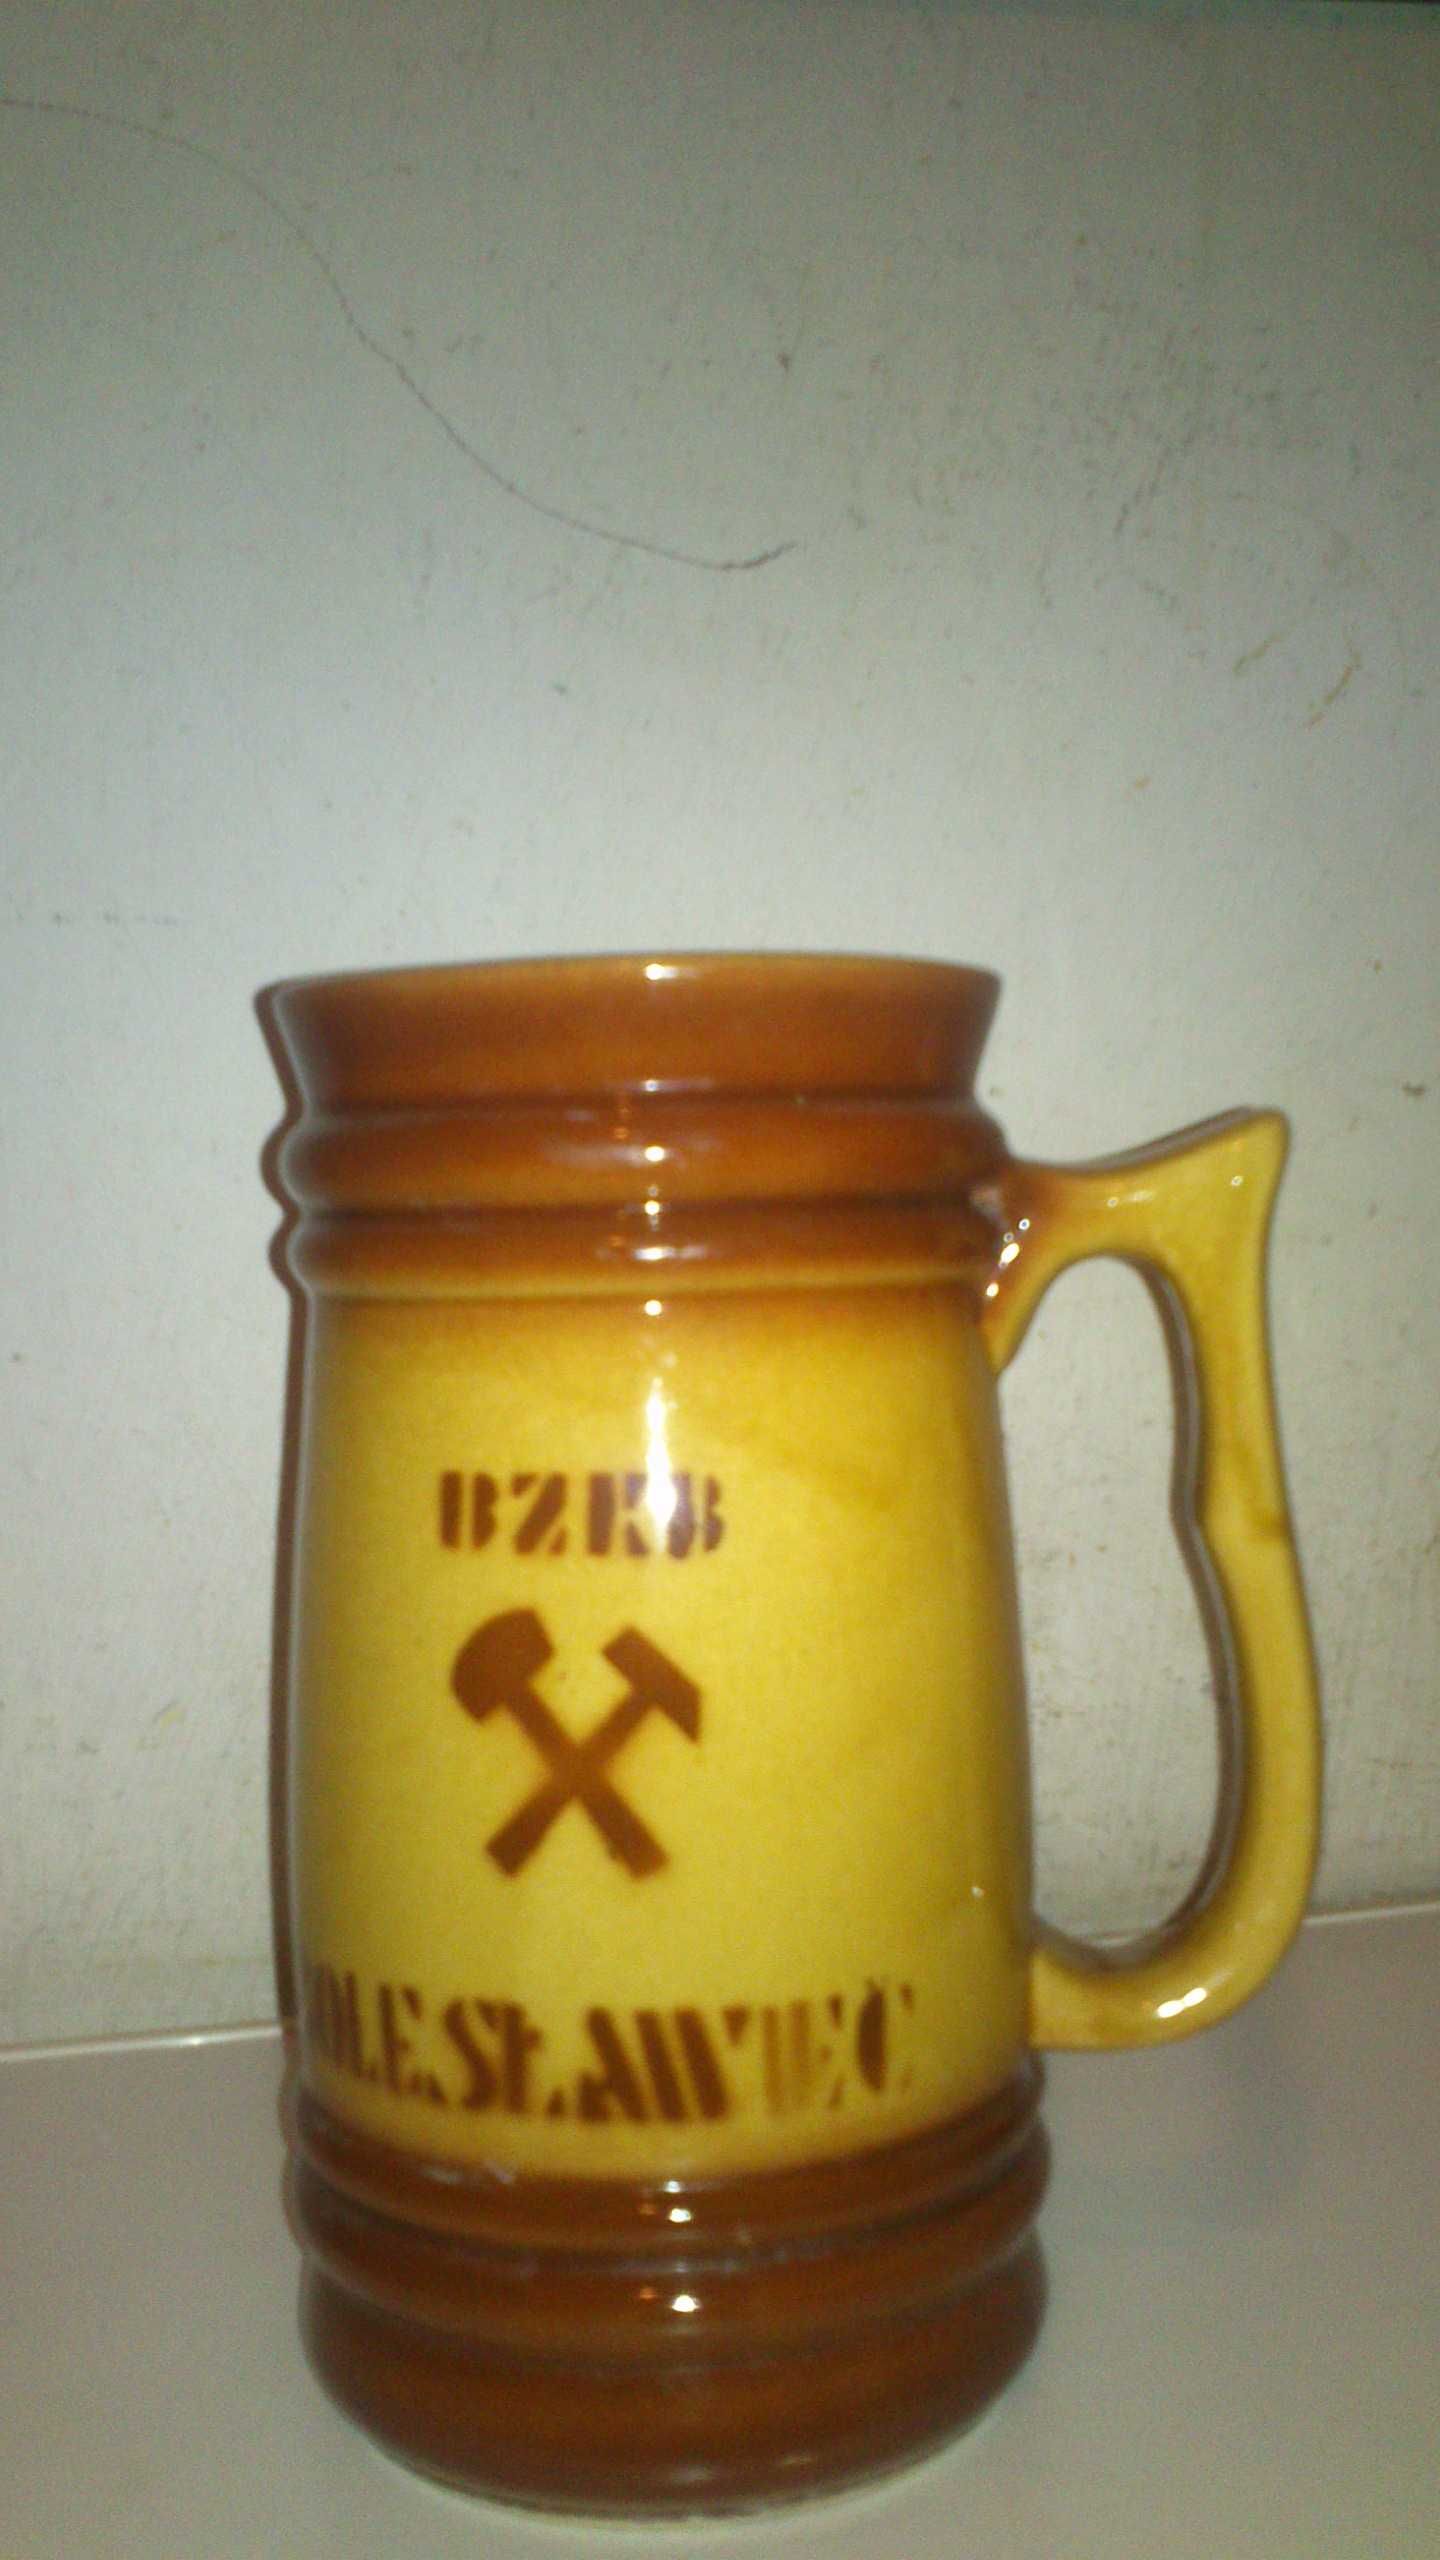 Kufel barbórkowy ,ceramiczny beżowo- brązowy 1982r Bolesławiec.